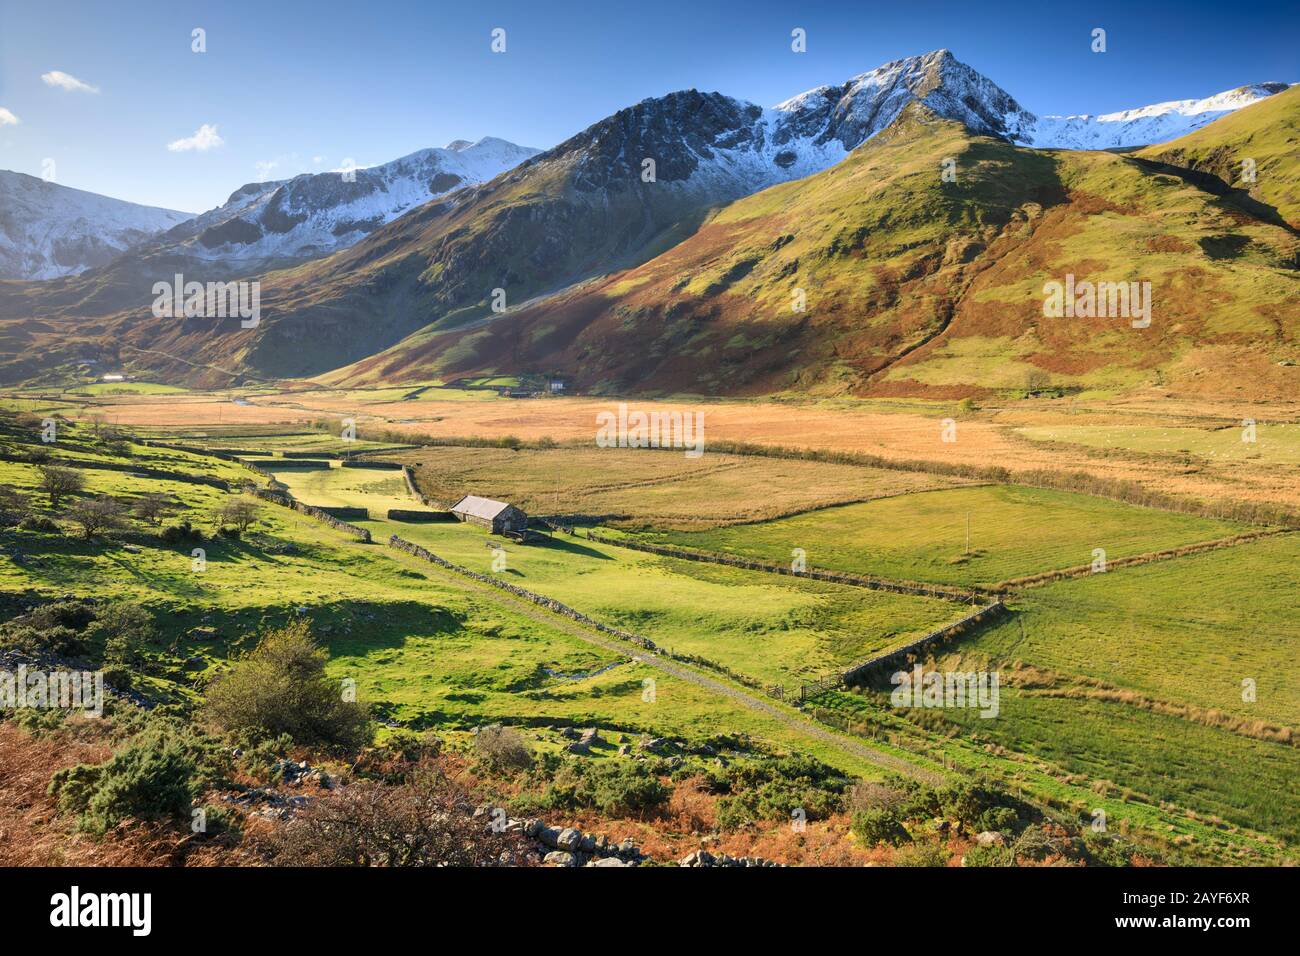 La Valle Di Nant Ffrancon Nel Parco Nazionale Di Snowdonia Foto Stock